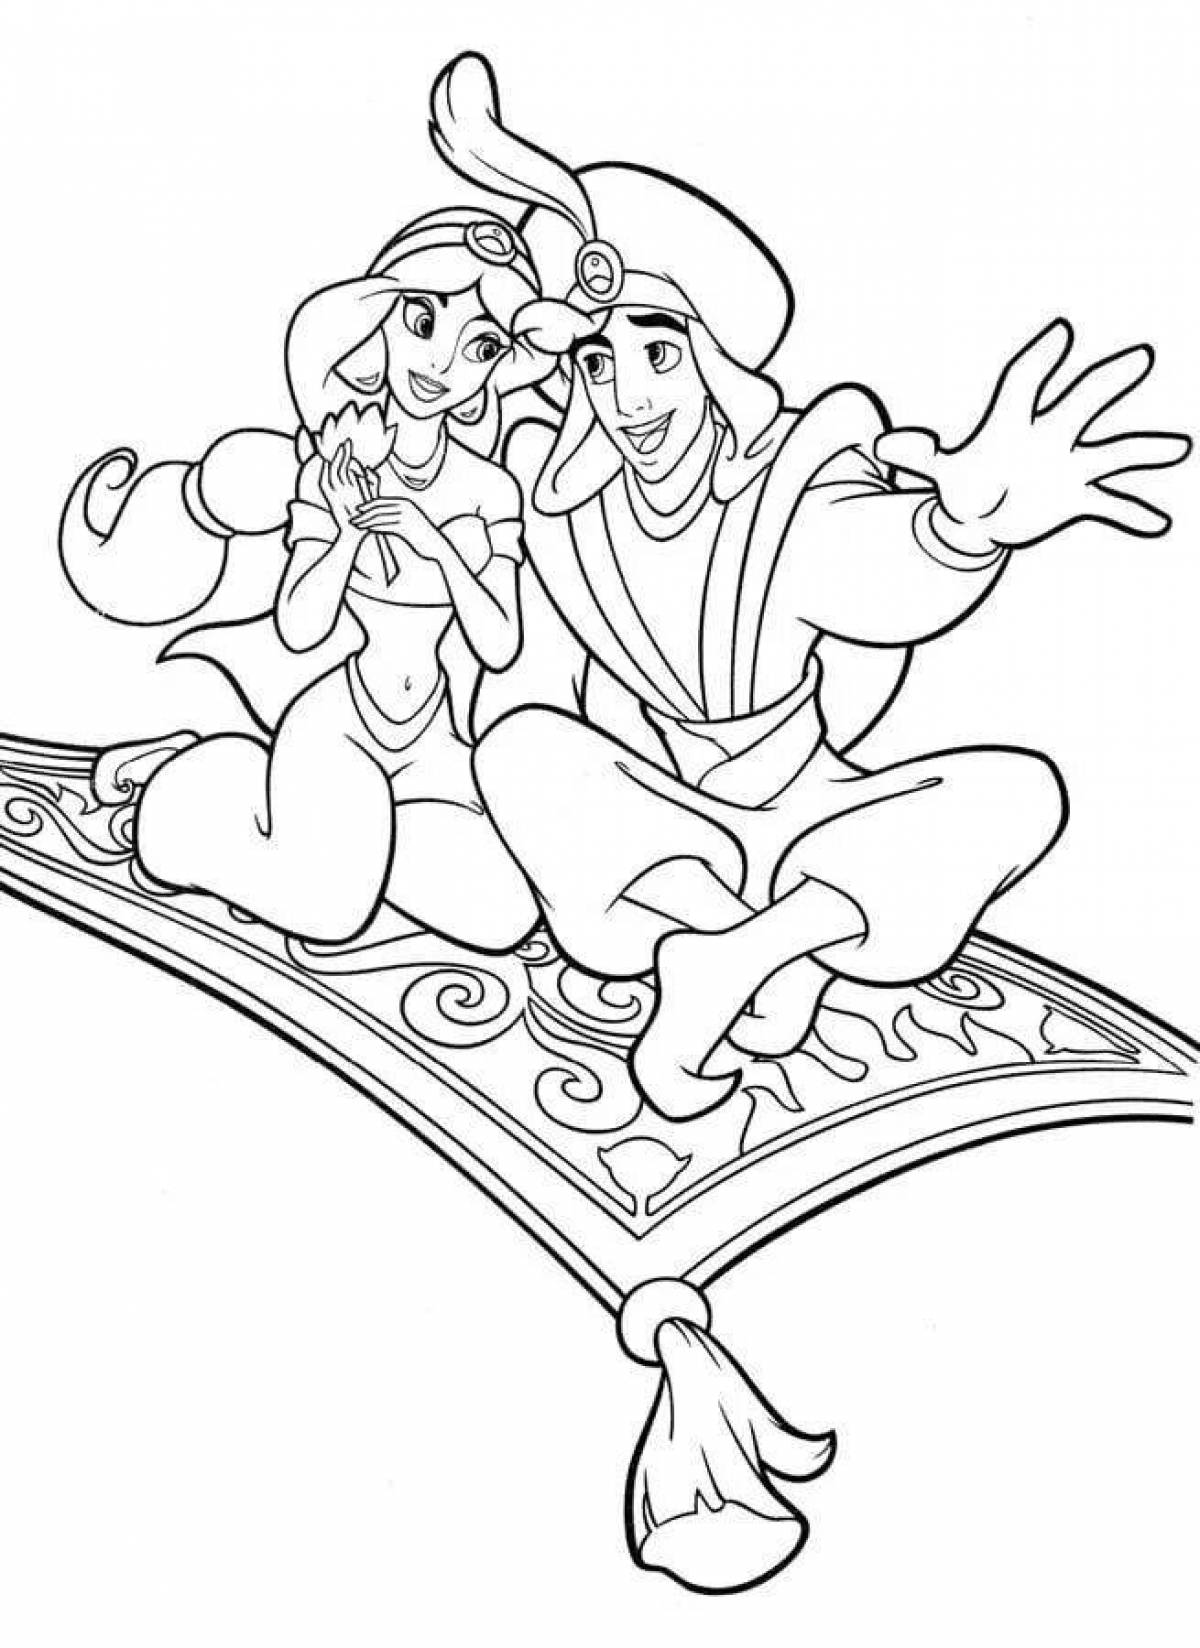 Aladdin's unique coloring page